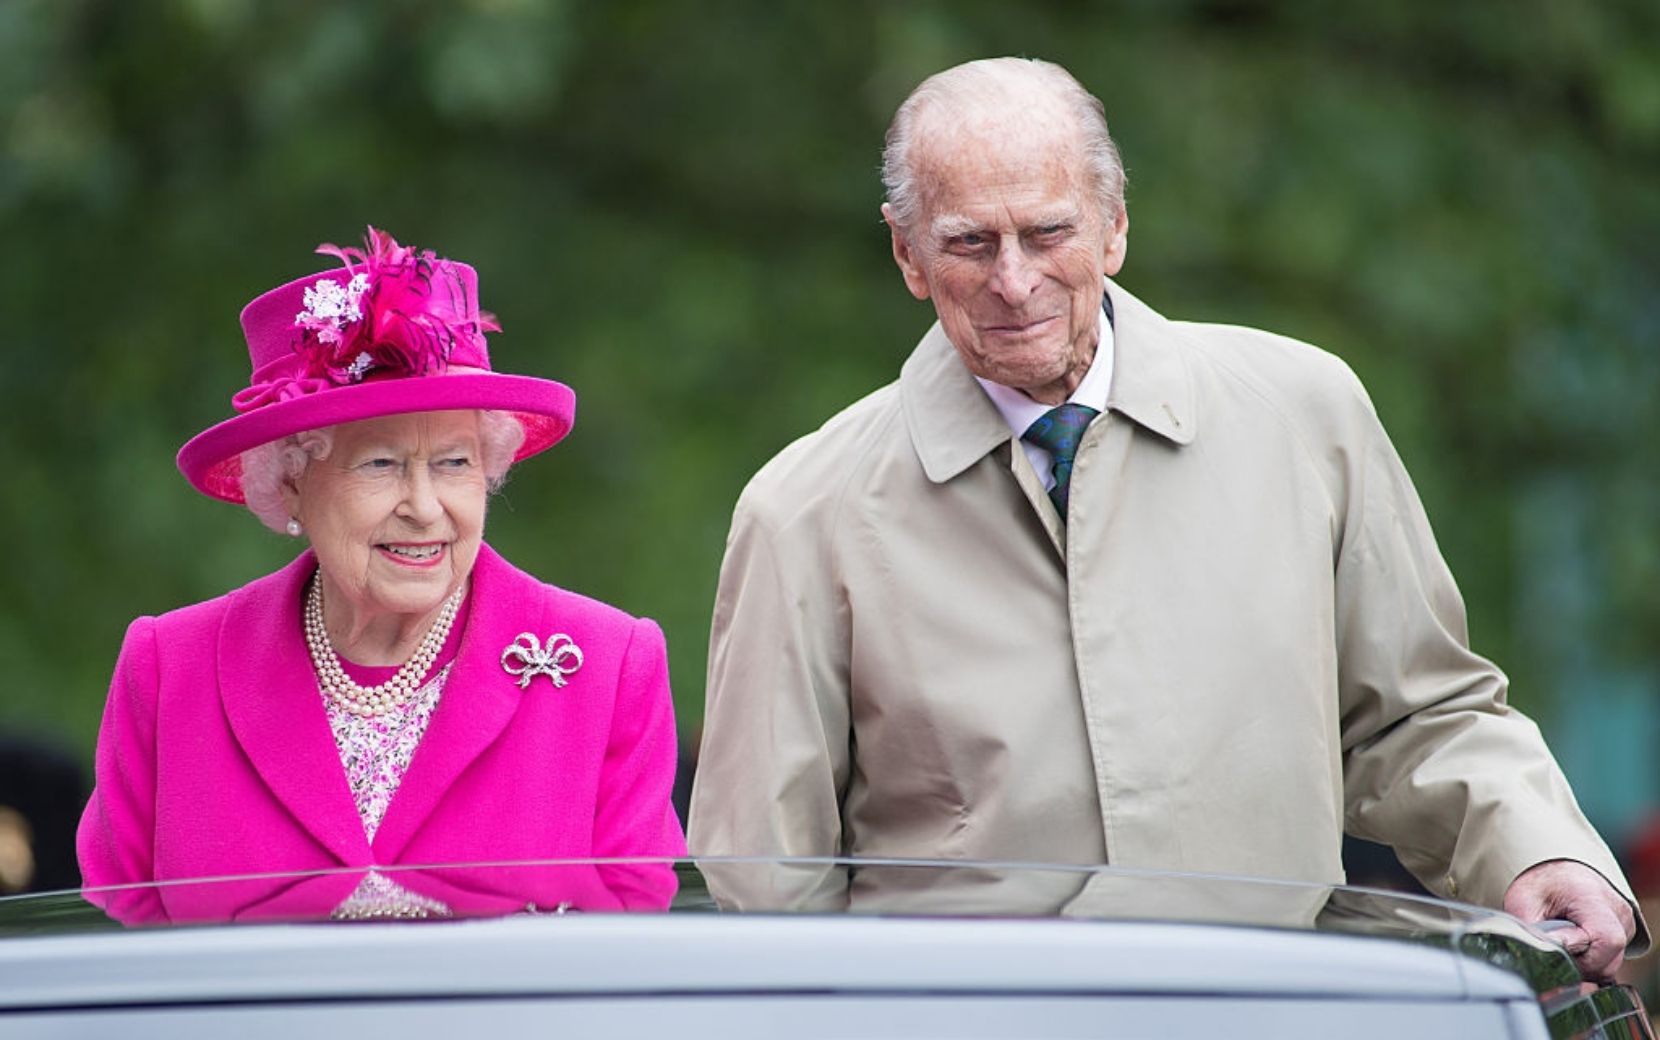 Rainha Elizabeth II se despede de Príncipe Philip em funeral e imagem emociona web: "De partir o coração"